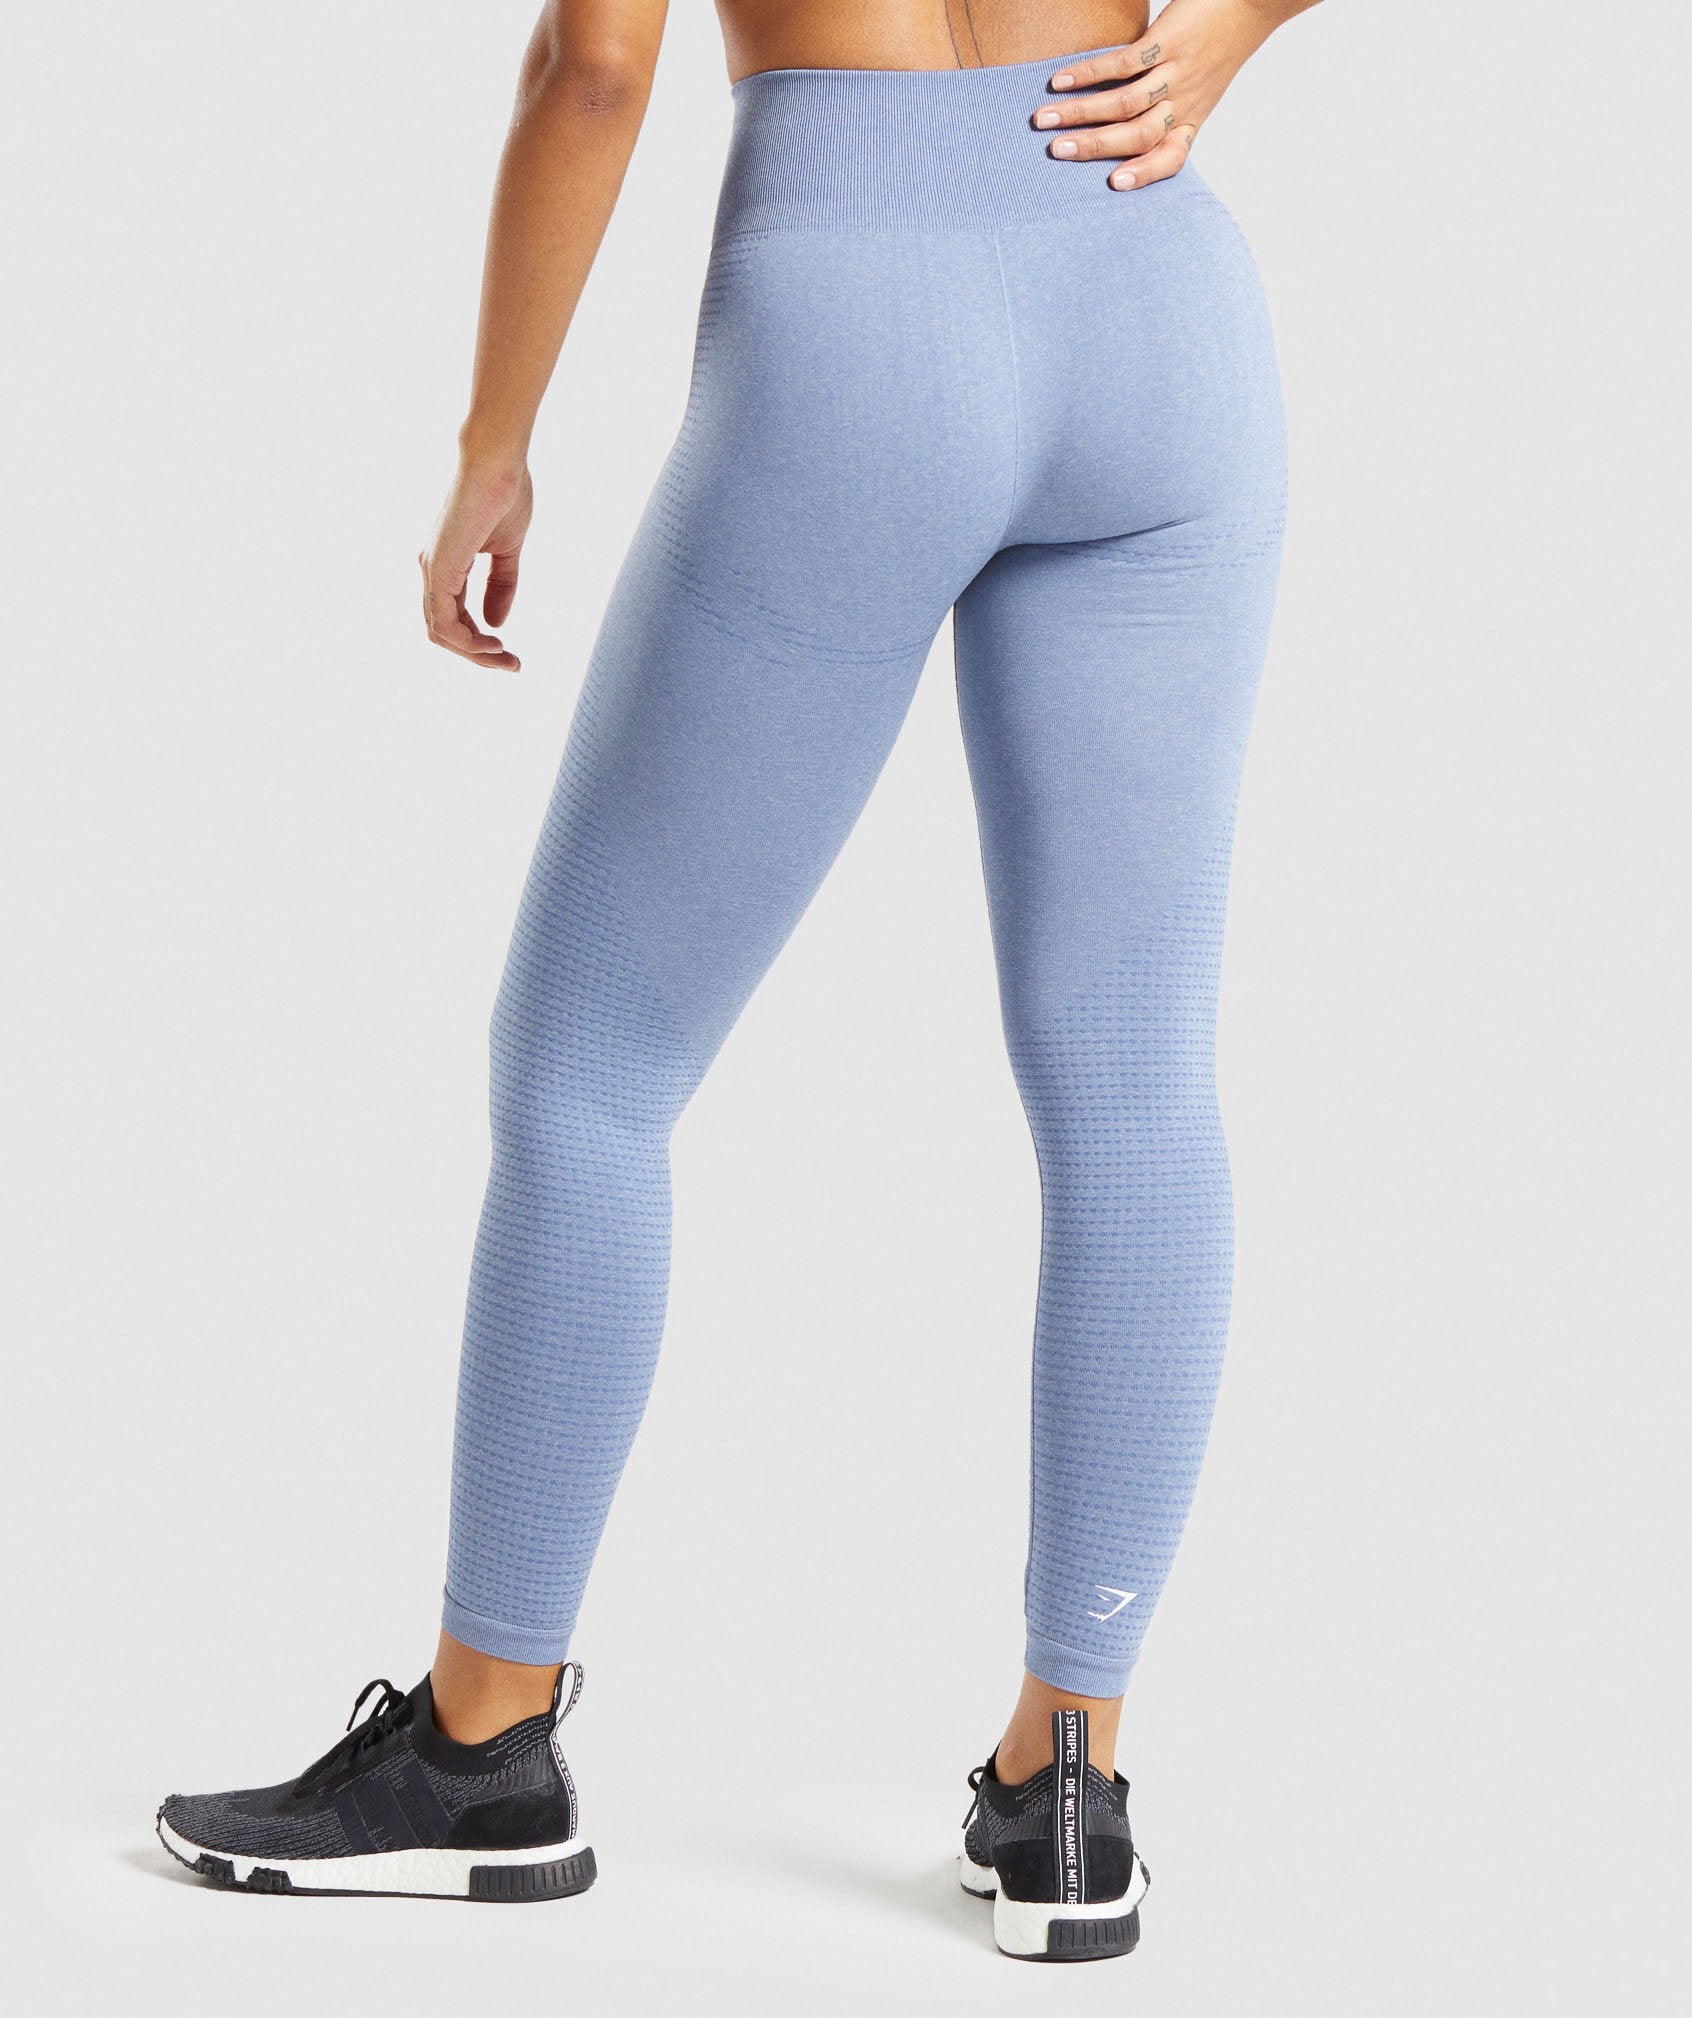 VITAL SEAMLESS 2.0 LEGGINGS Evening Blue Marl Gymshark Womens Body Fit  Size: XS, S #gymsharkwomen #gymleggings #لگ_ورزشی #لگ_سیملس…